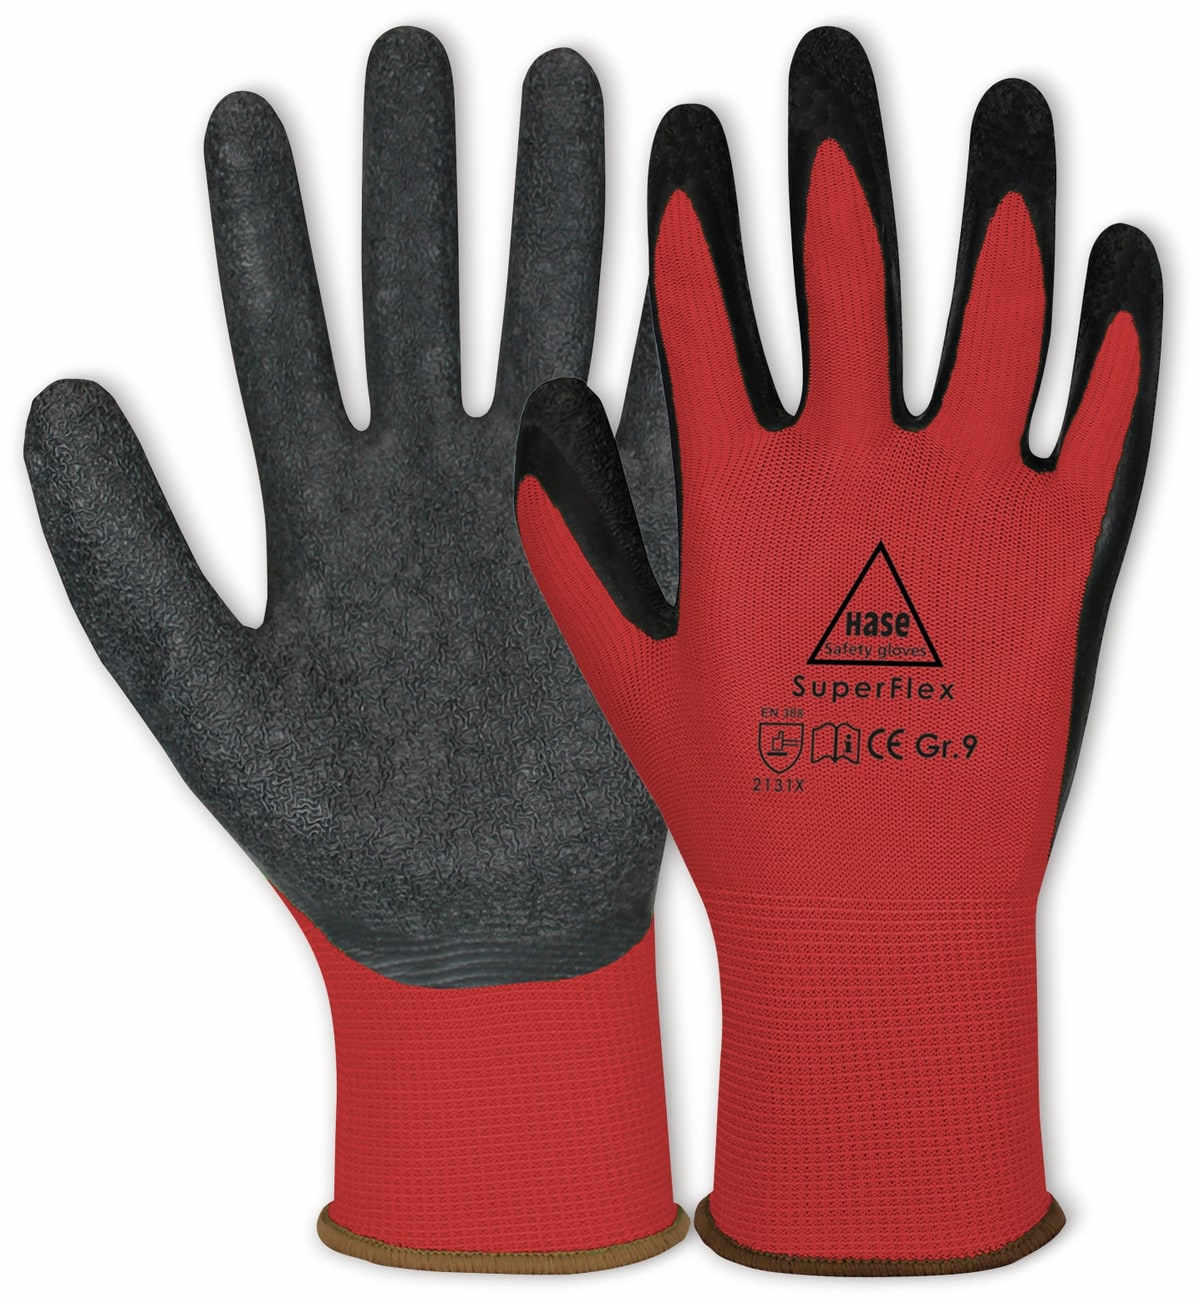 HASE SAFETY GLOVES Latex-Arbeitshandschuhe Superflex, EN 388, EN 420, Größe 9, rot/schwarz von Hase Safety gloves